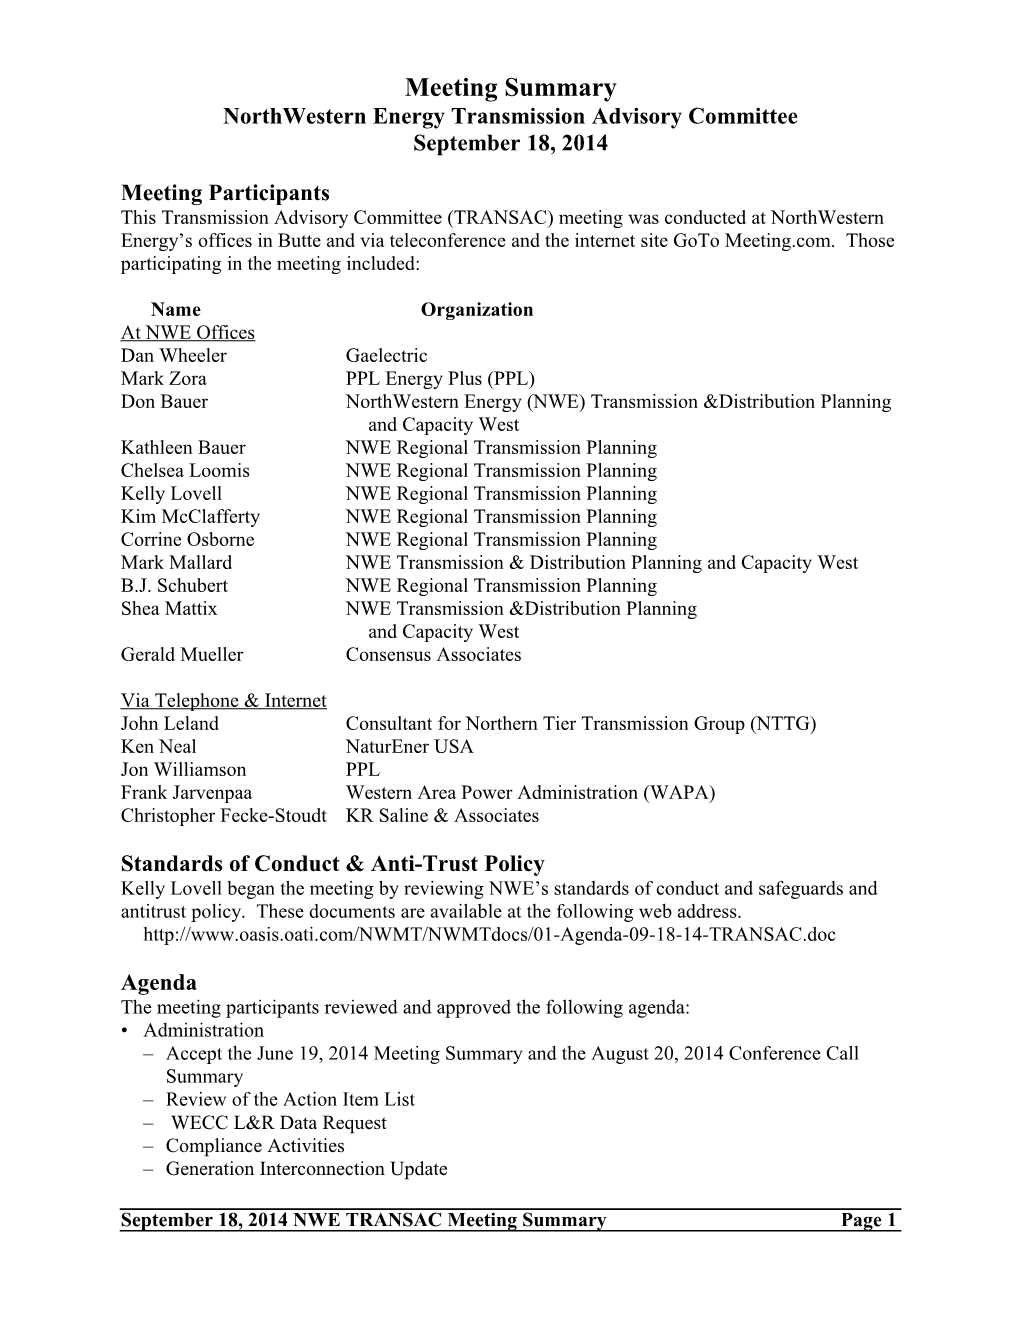 Northwestern Energy Transmission Advisory Committee s1